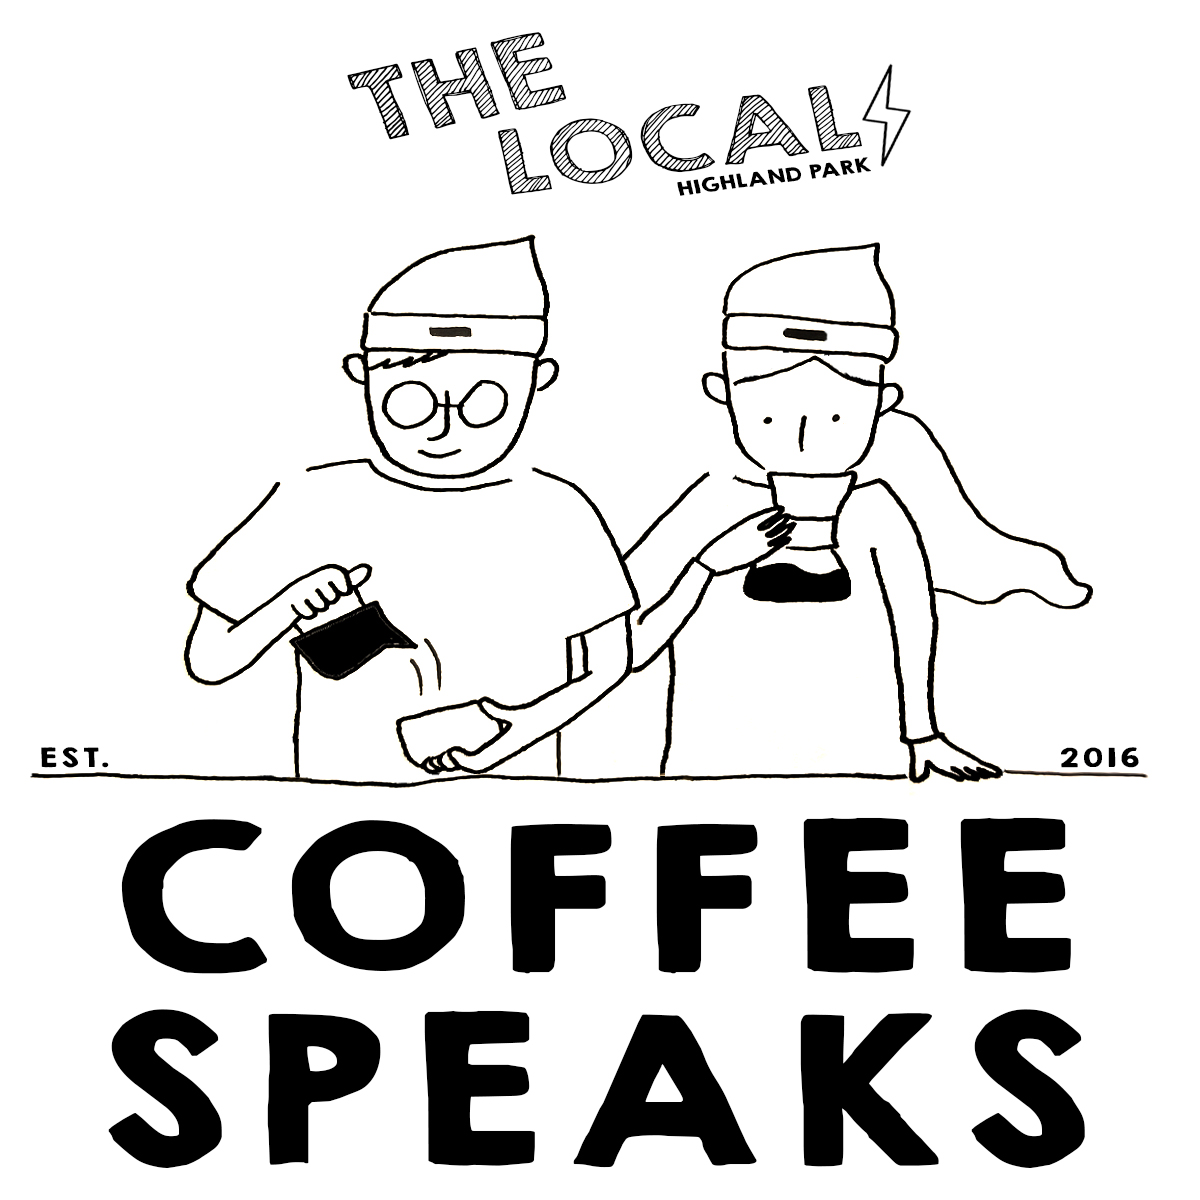 COFFEE SPEAKS